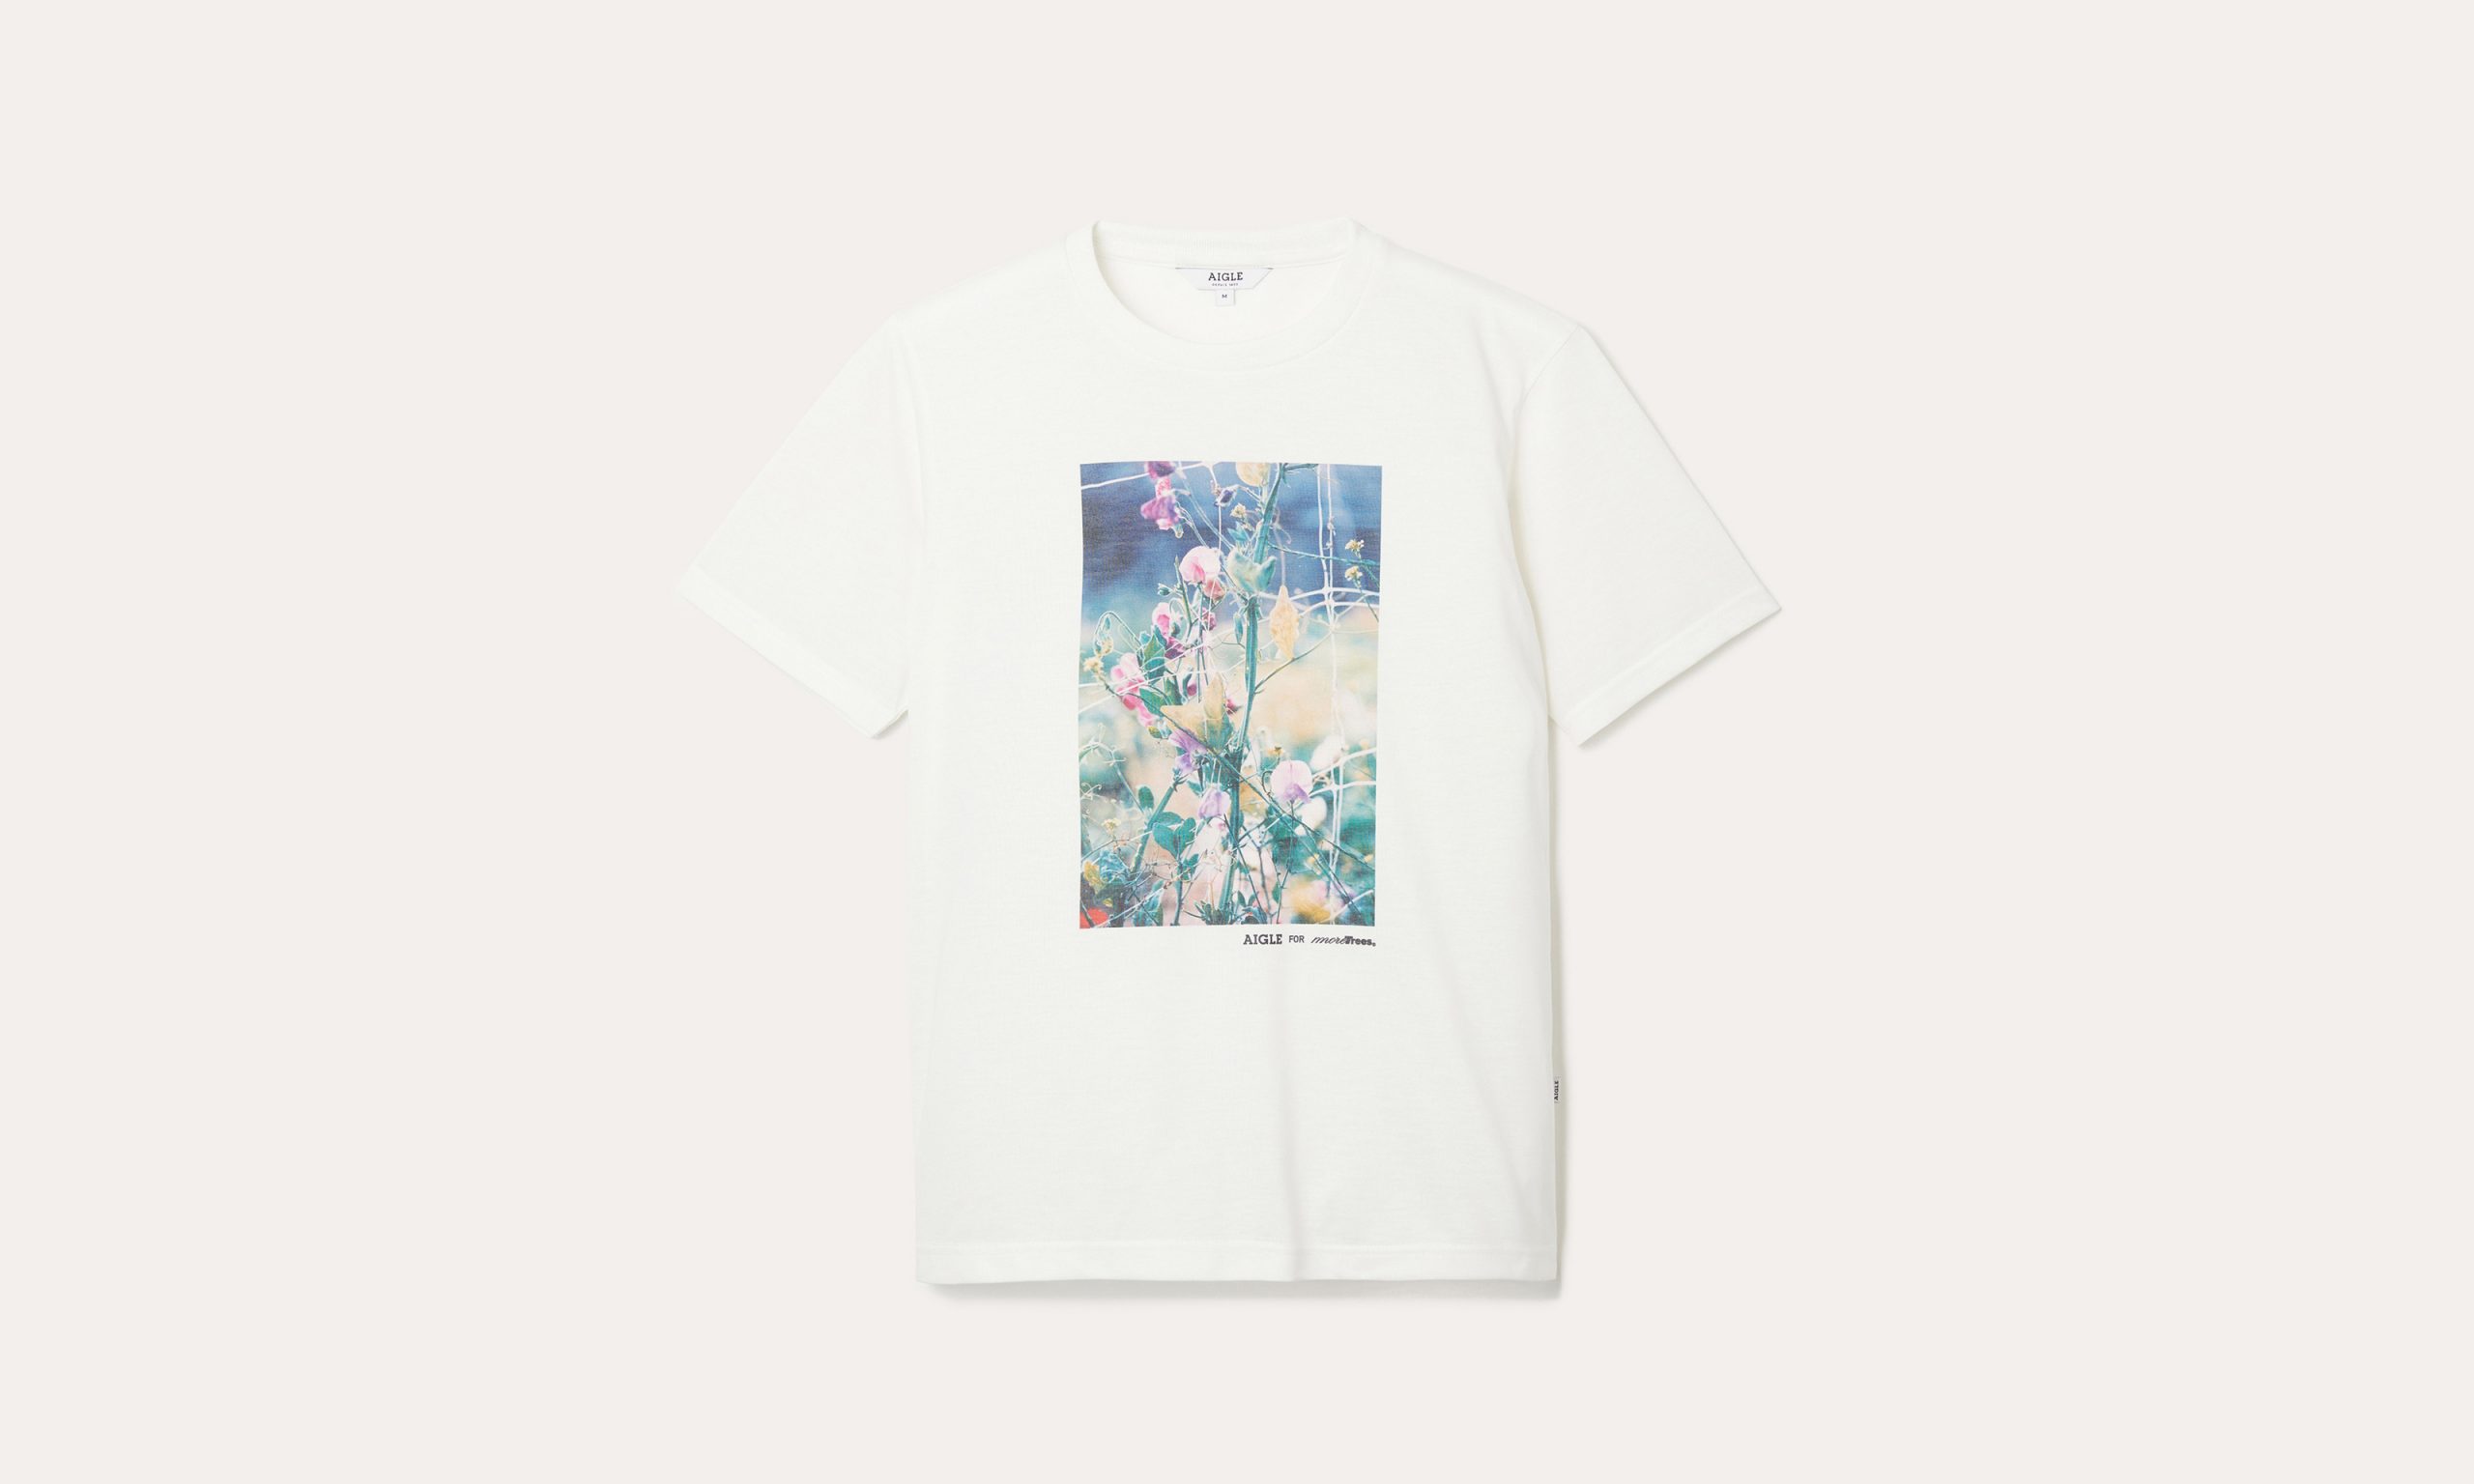 坂本龙一「more trees」联手法国品牌 AIGLE 发布慈善 T 恤系列